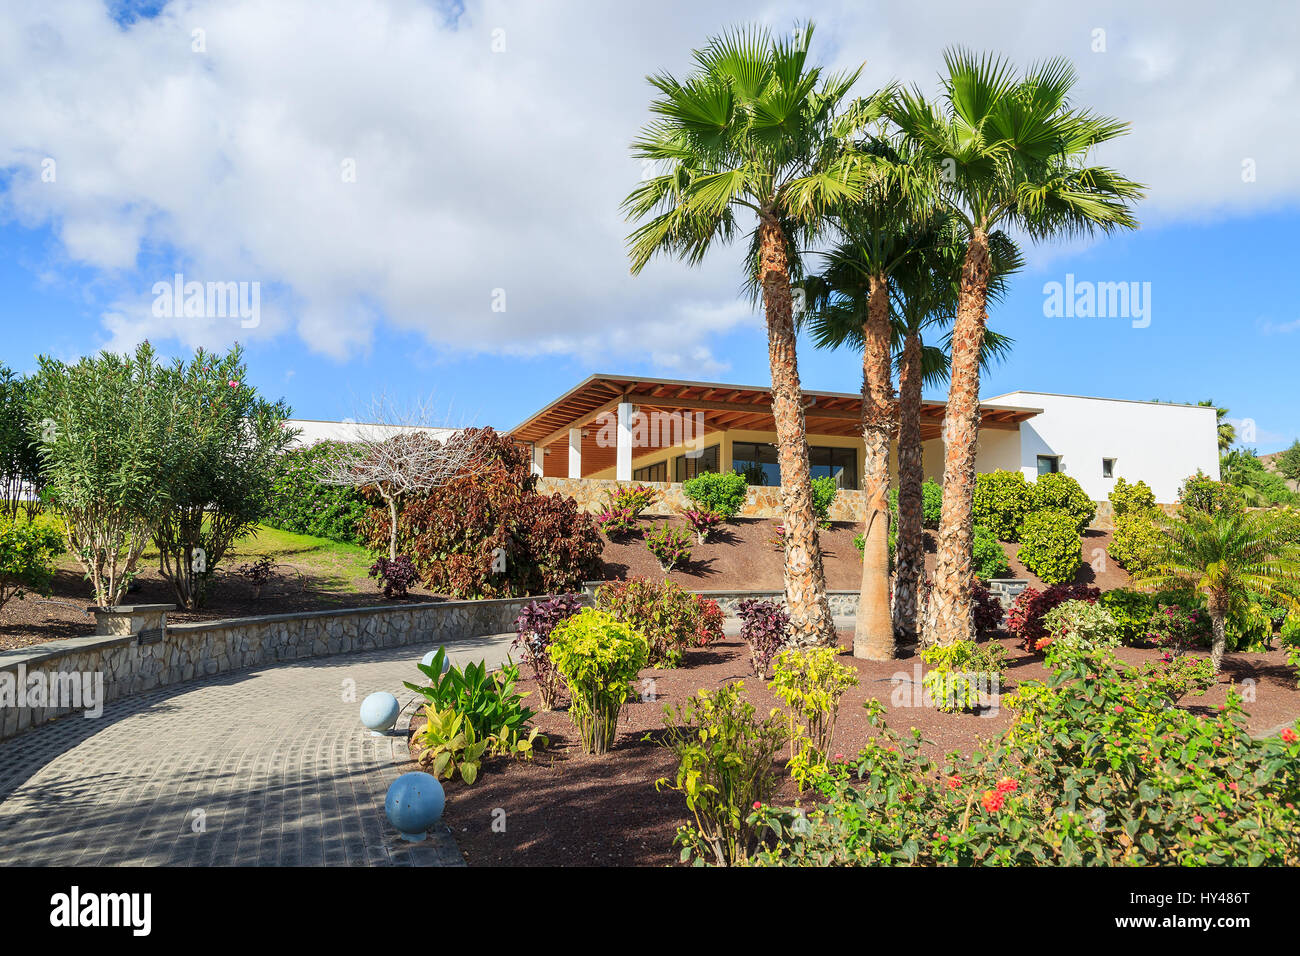 Jardín de plantas tropicales en la costa de Fuerteventura en las playitas village, Islas Canarias, España Foto de stock